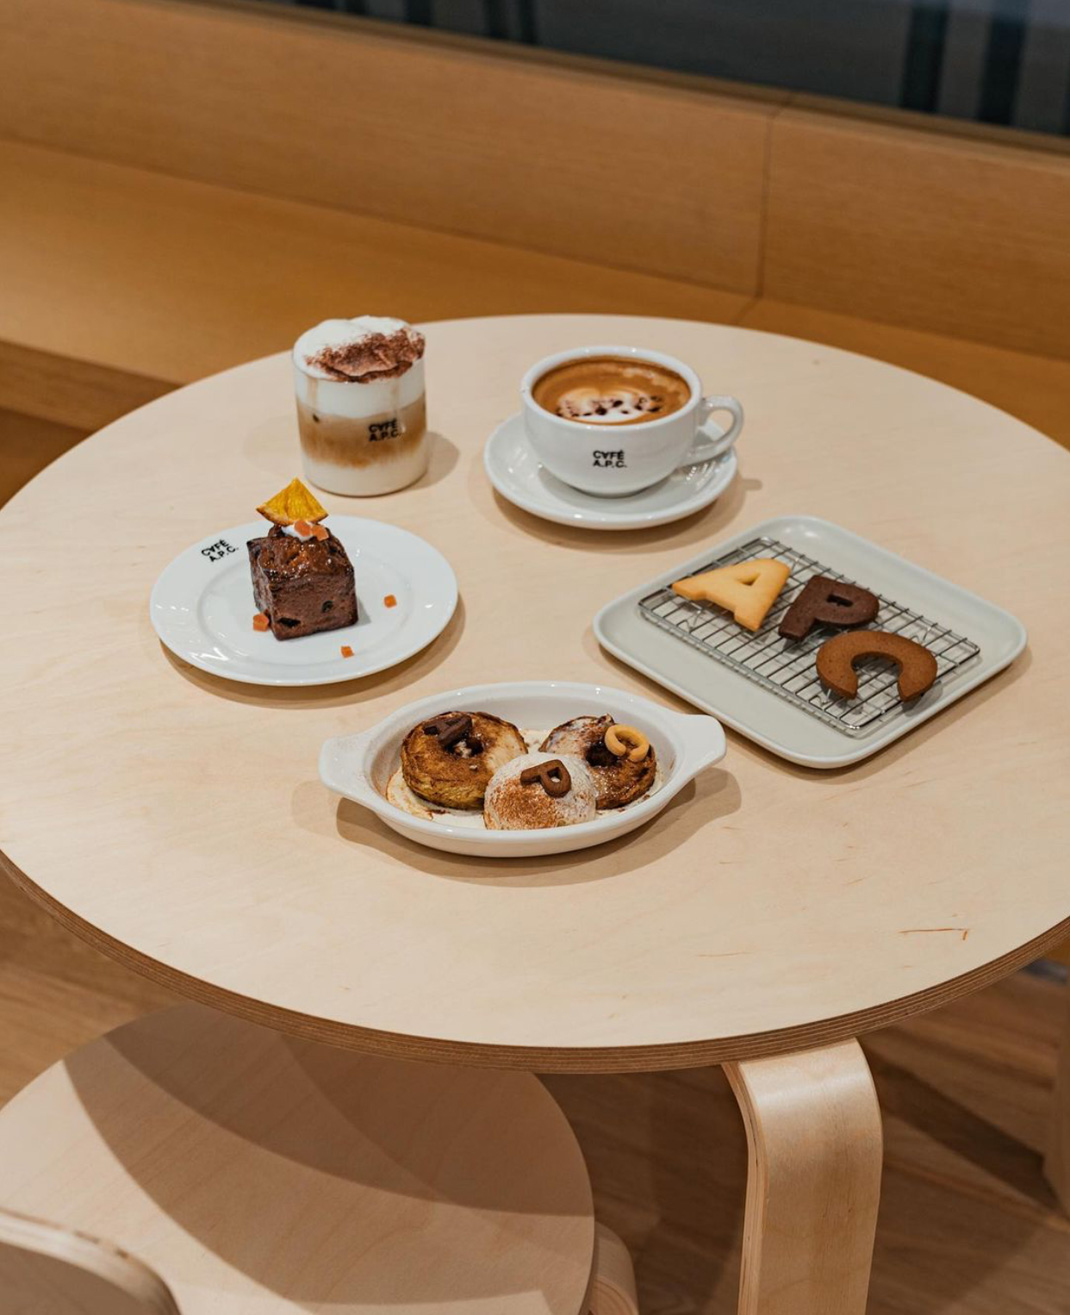 咖啡店CAFEAPC 韩国 咖啡店 格栅 logo设计 vi设计 空间设计